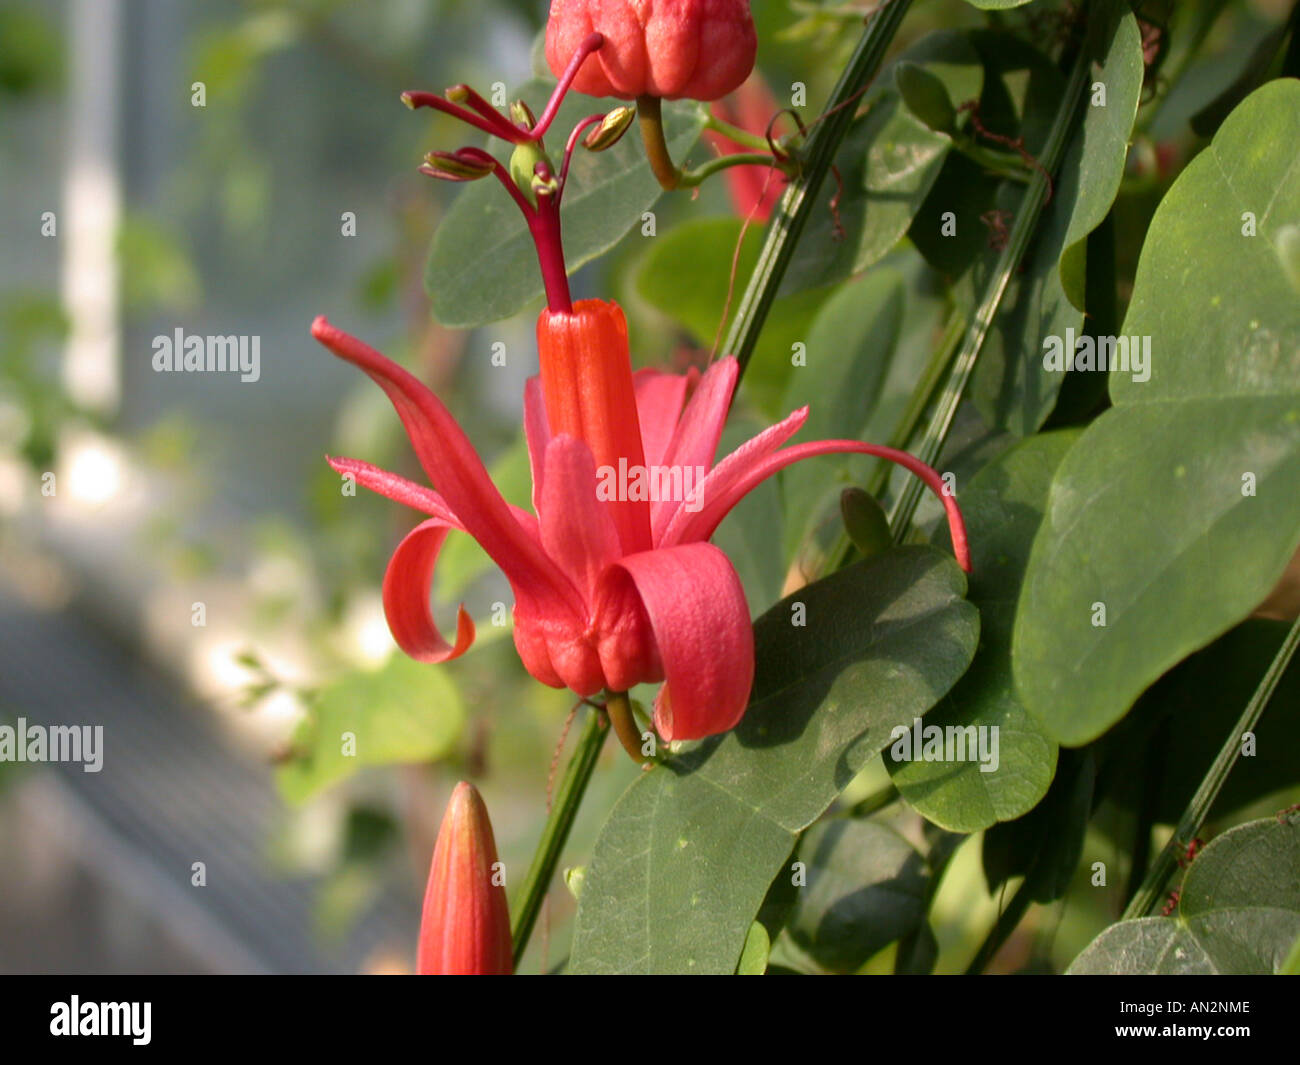 Passiflora murucuja (Passiflora murucuja), flower Stock Photo